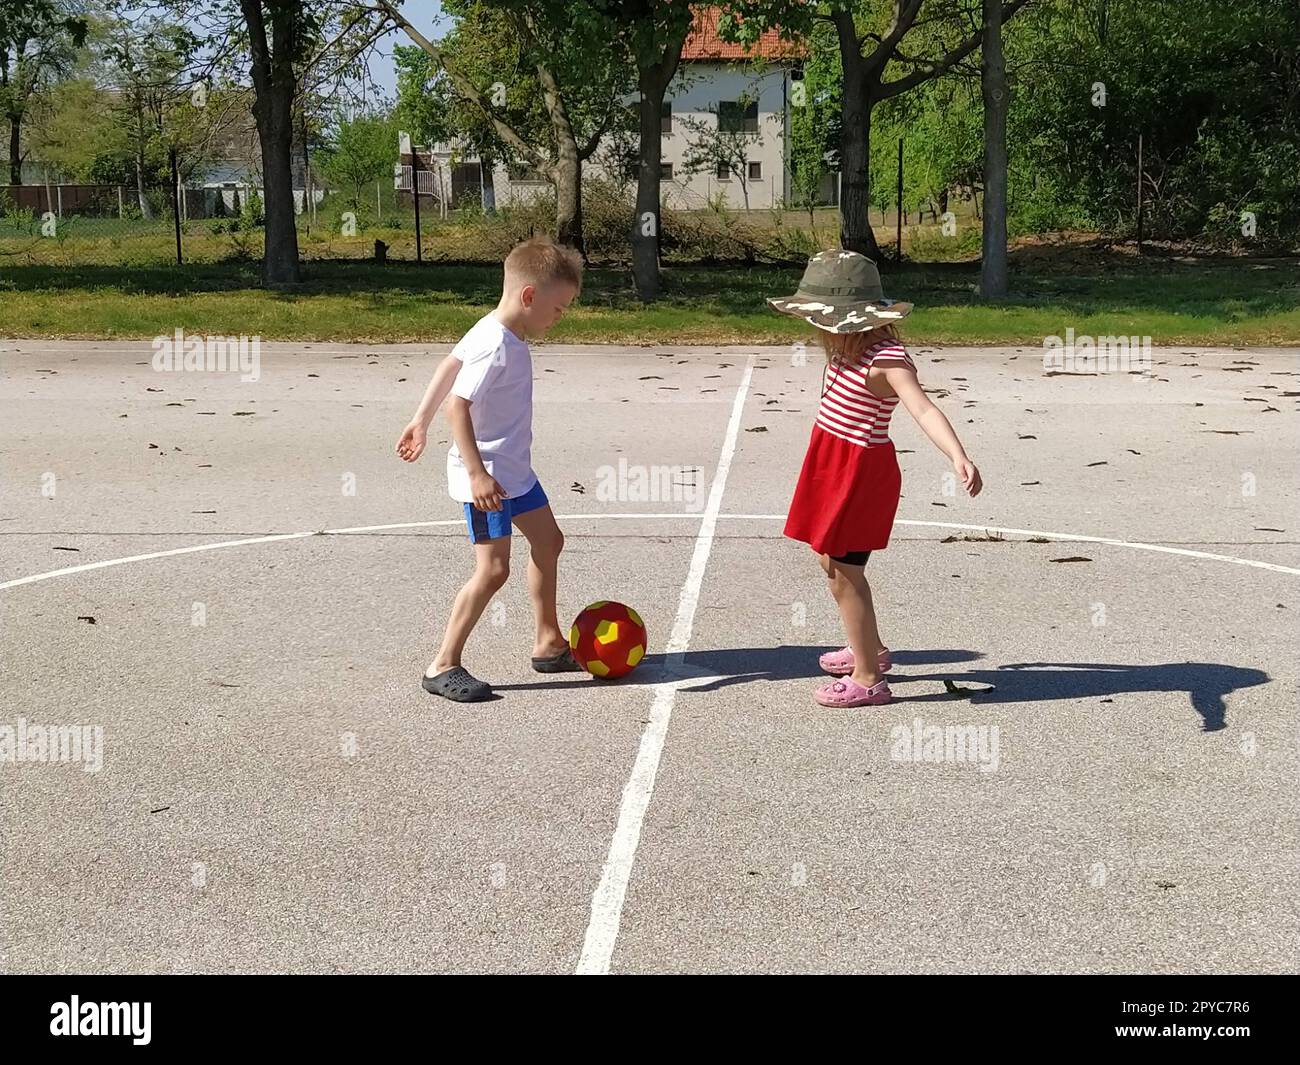 Kinder spielen draußen Ball. Ein Junge in einem weißen T-Shirt und ein Mädchen in einem roten Kleid spielen Ball auf einem Asphaltspielplatz. Mädchen mit Hut und breiter Krempe. Der Hof ist mit einem weißen Streifen bedeckt. Sommerzeit Stockfoto